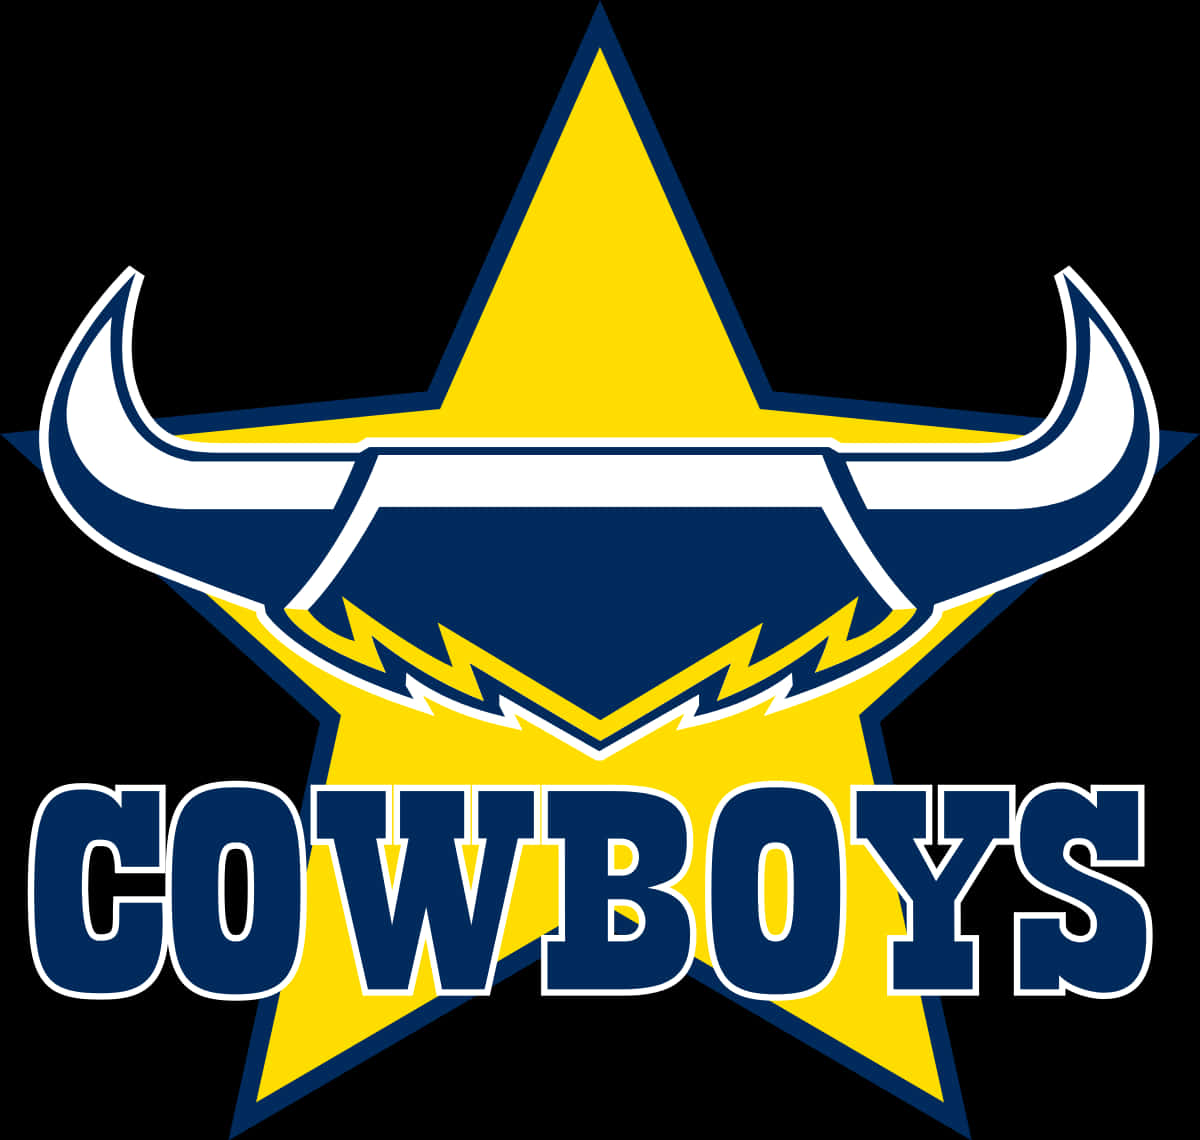 Cowboys Star Logo PNG image